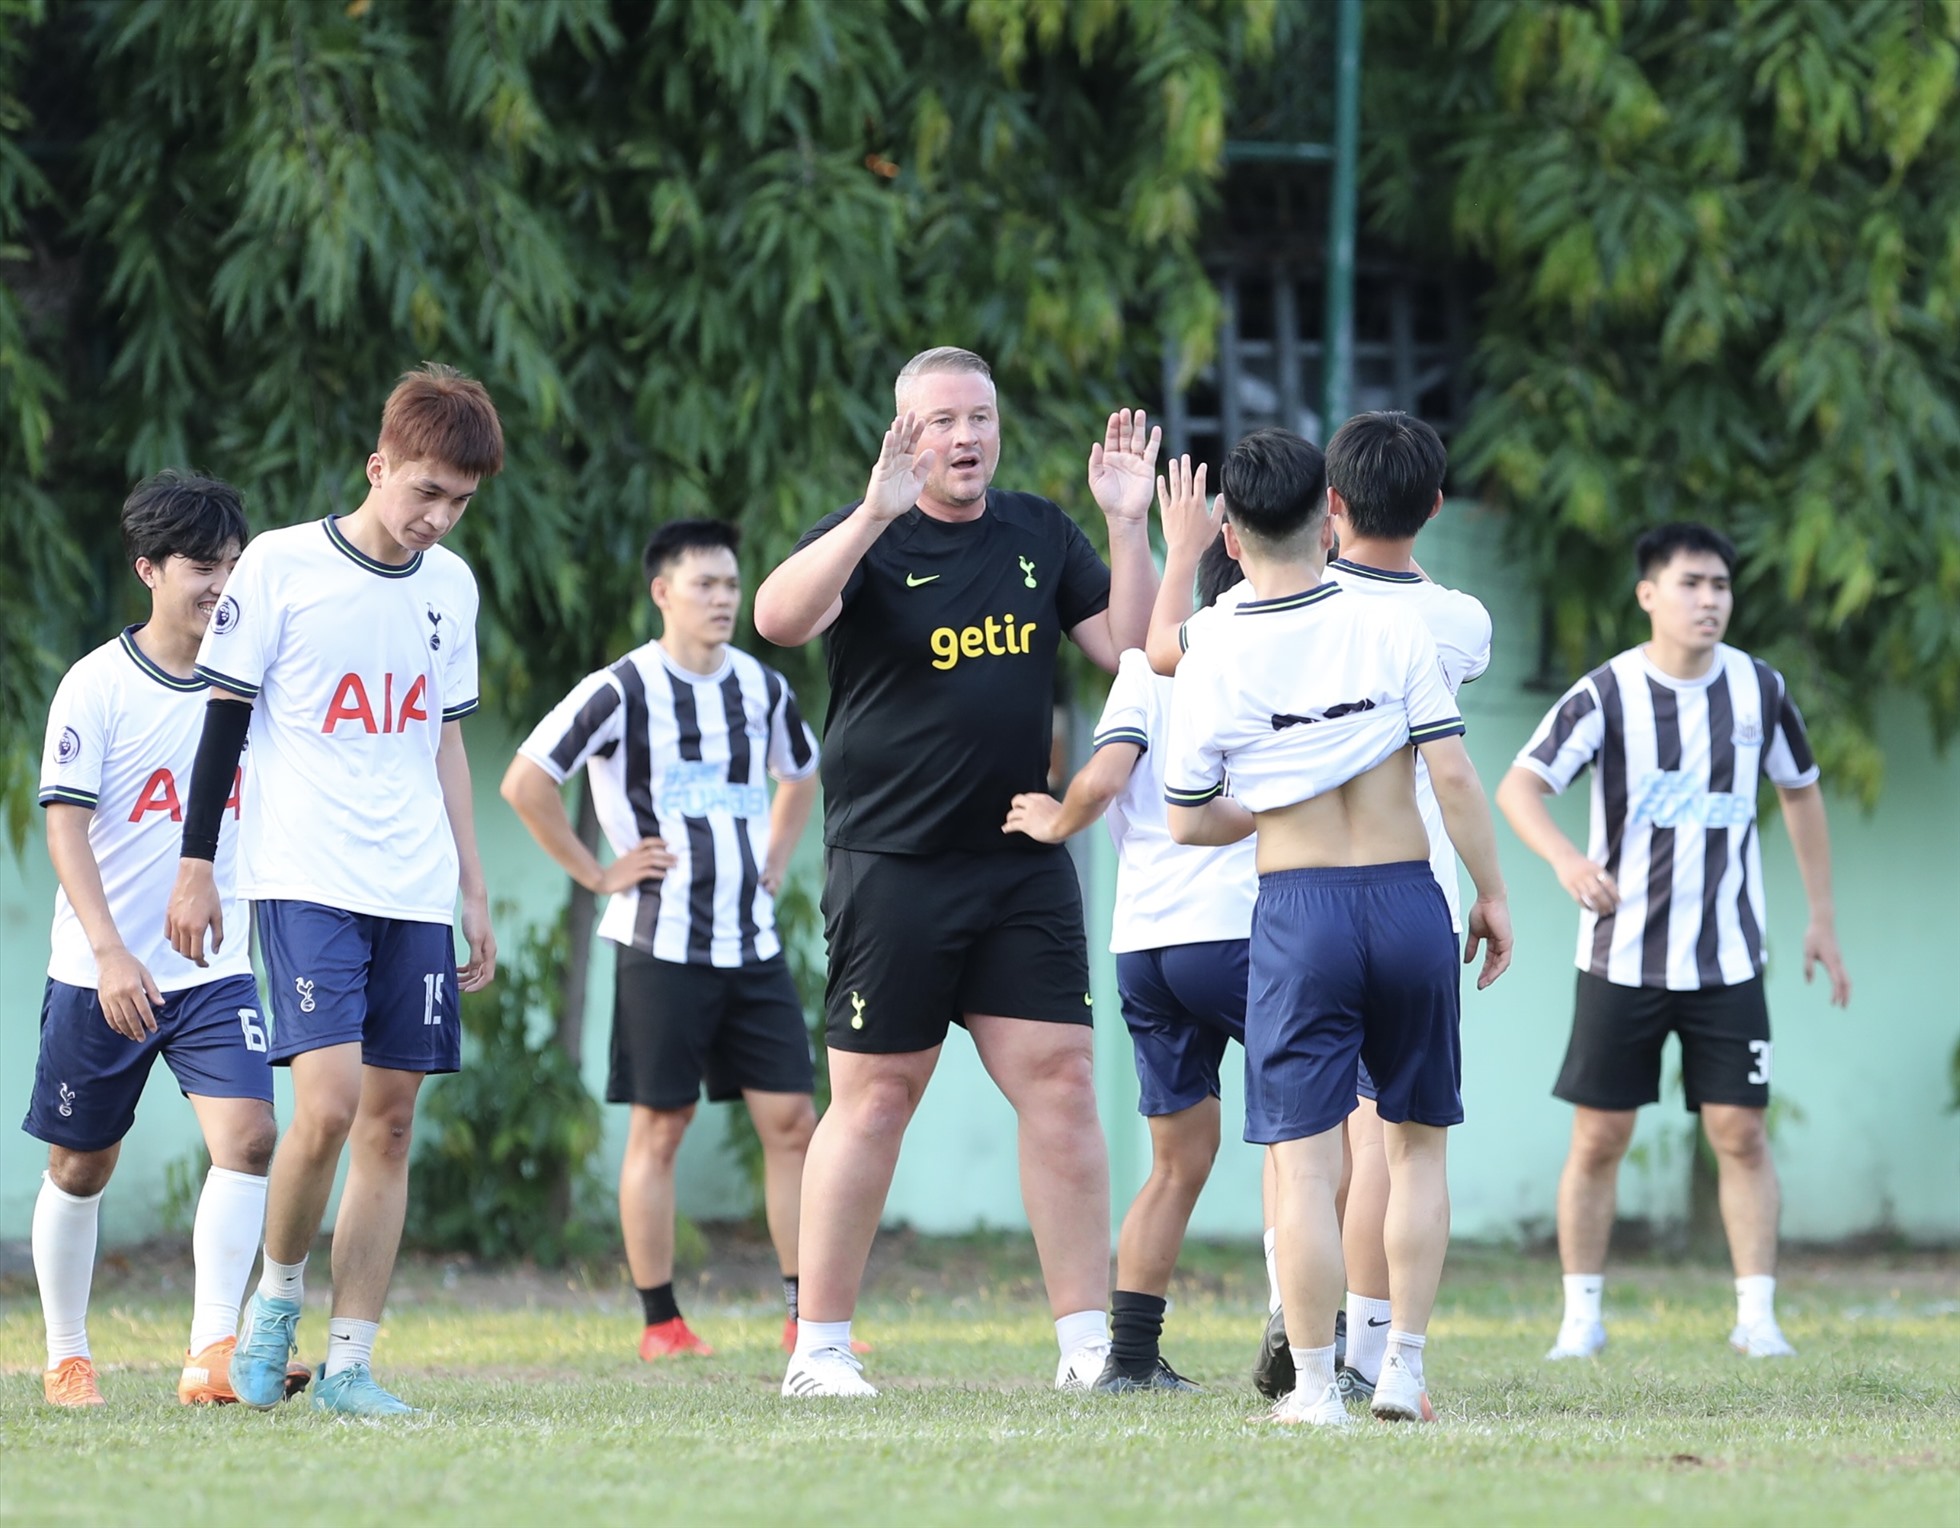 Paul Robinson vui vẻ thi đấu giao lưu cùng các cổ động viên Tottenham tại Việt Nam. Cựu thủ môn tuyển Anh dự đoán Brazil sẽ lên ngôi vô địch World Cup 2022. Ảnh: K.A